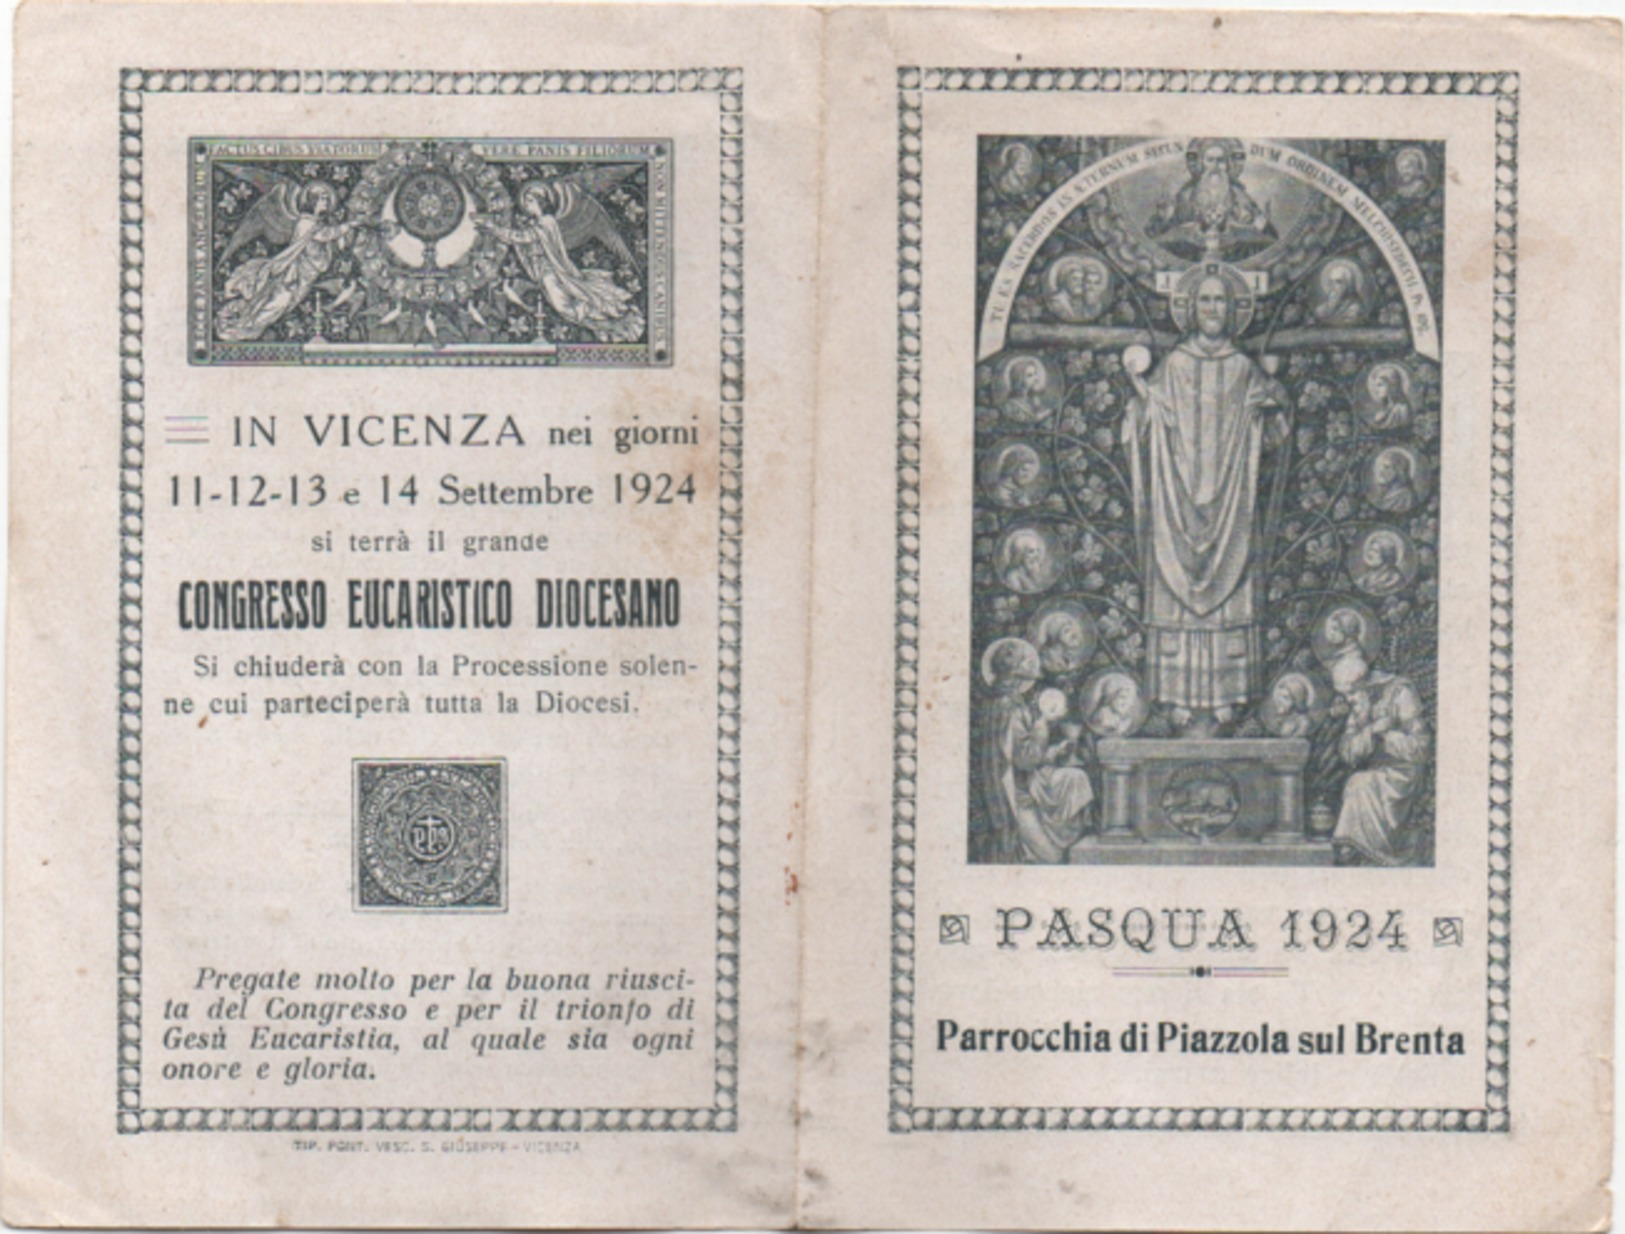 Santino Per La Comunione Pasquale 1934 Nella Parrocchia Di Piazzola Sul Brenta (Padova) - Santini